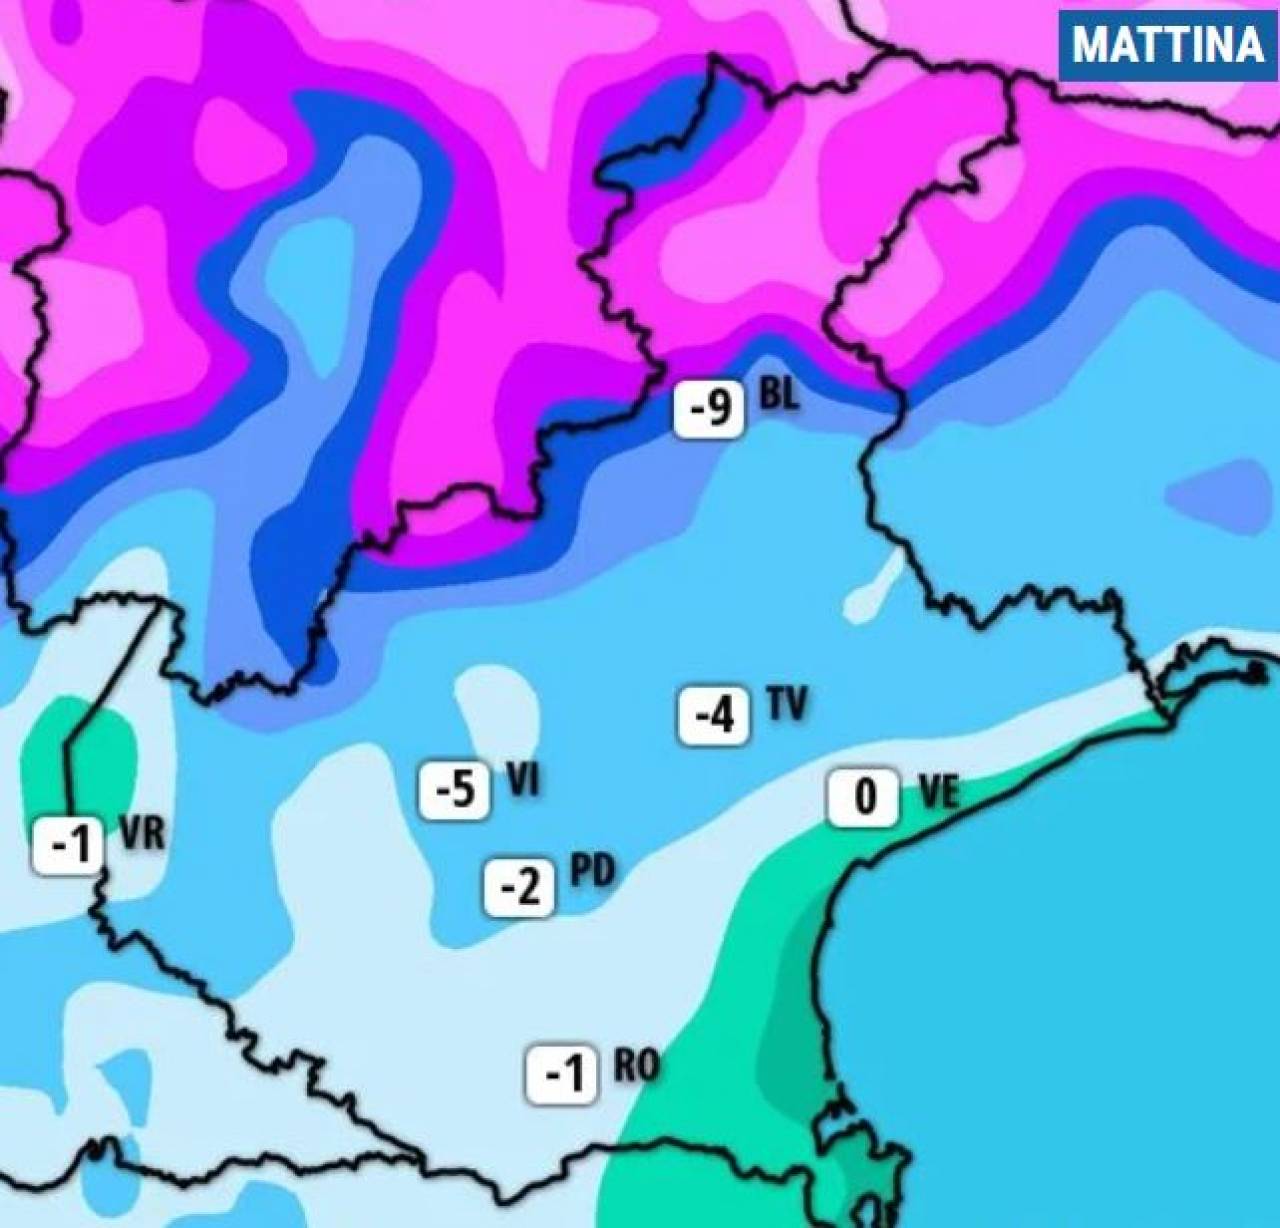 Meteo Veneto: le temperature minime previste martedì mattina in pianura